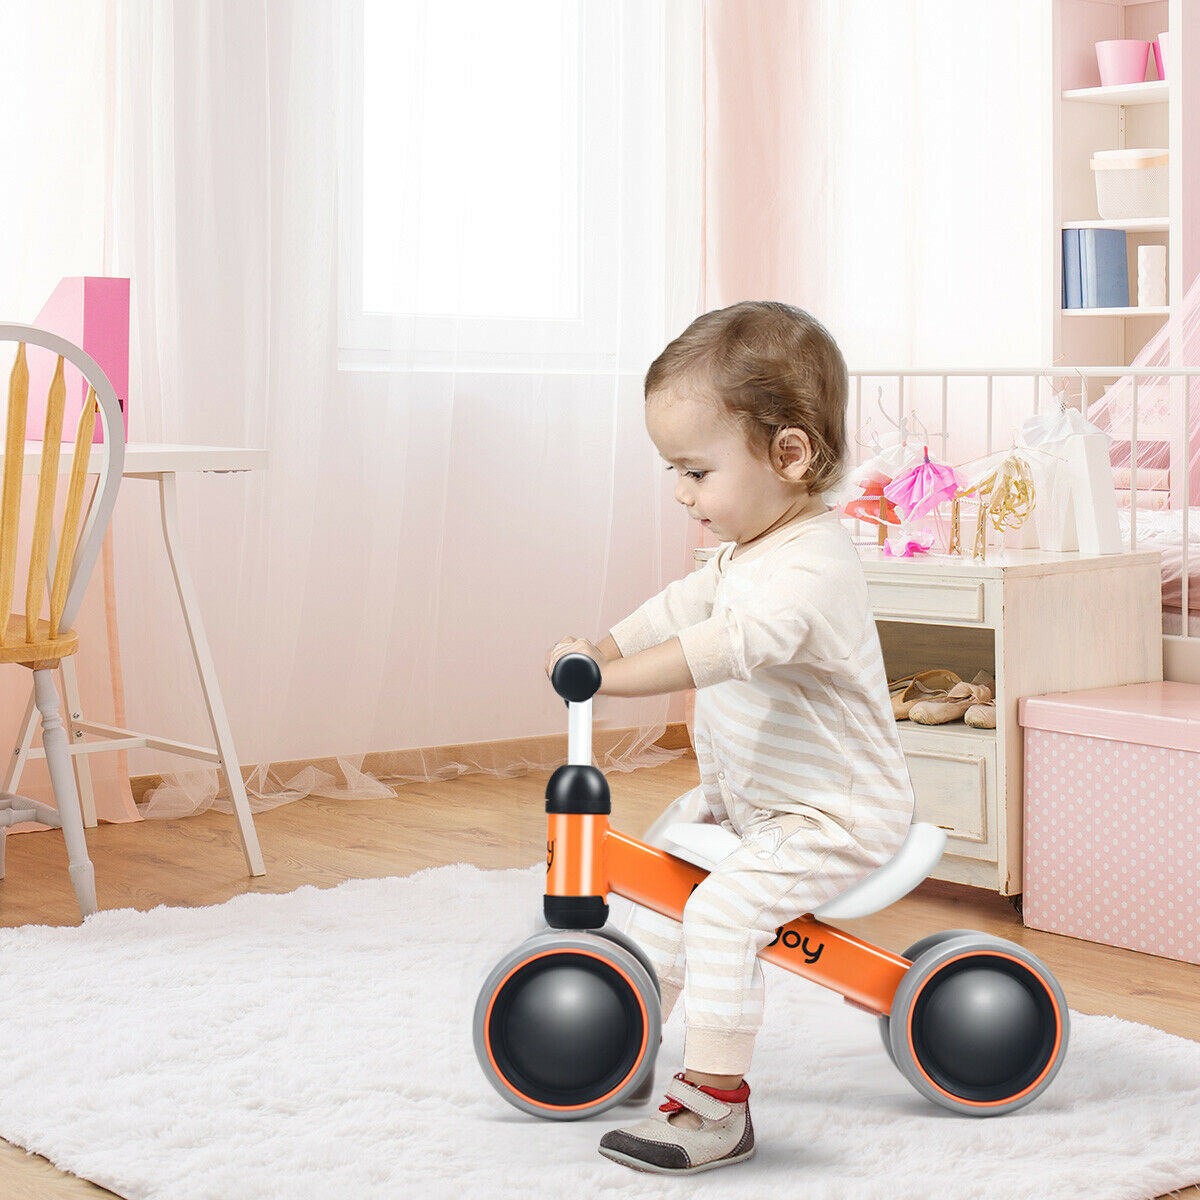 Babyjoy 4 Wheels Baby Balance Bike Children Walker No-Pedal Toddler Toys Rides Orange - image 3 of 10